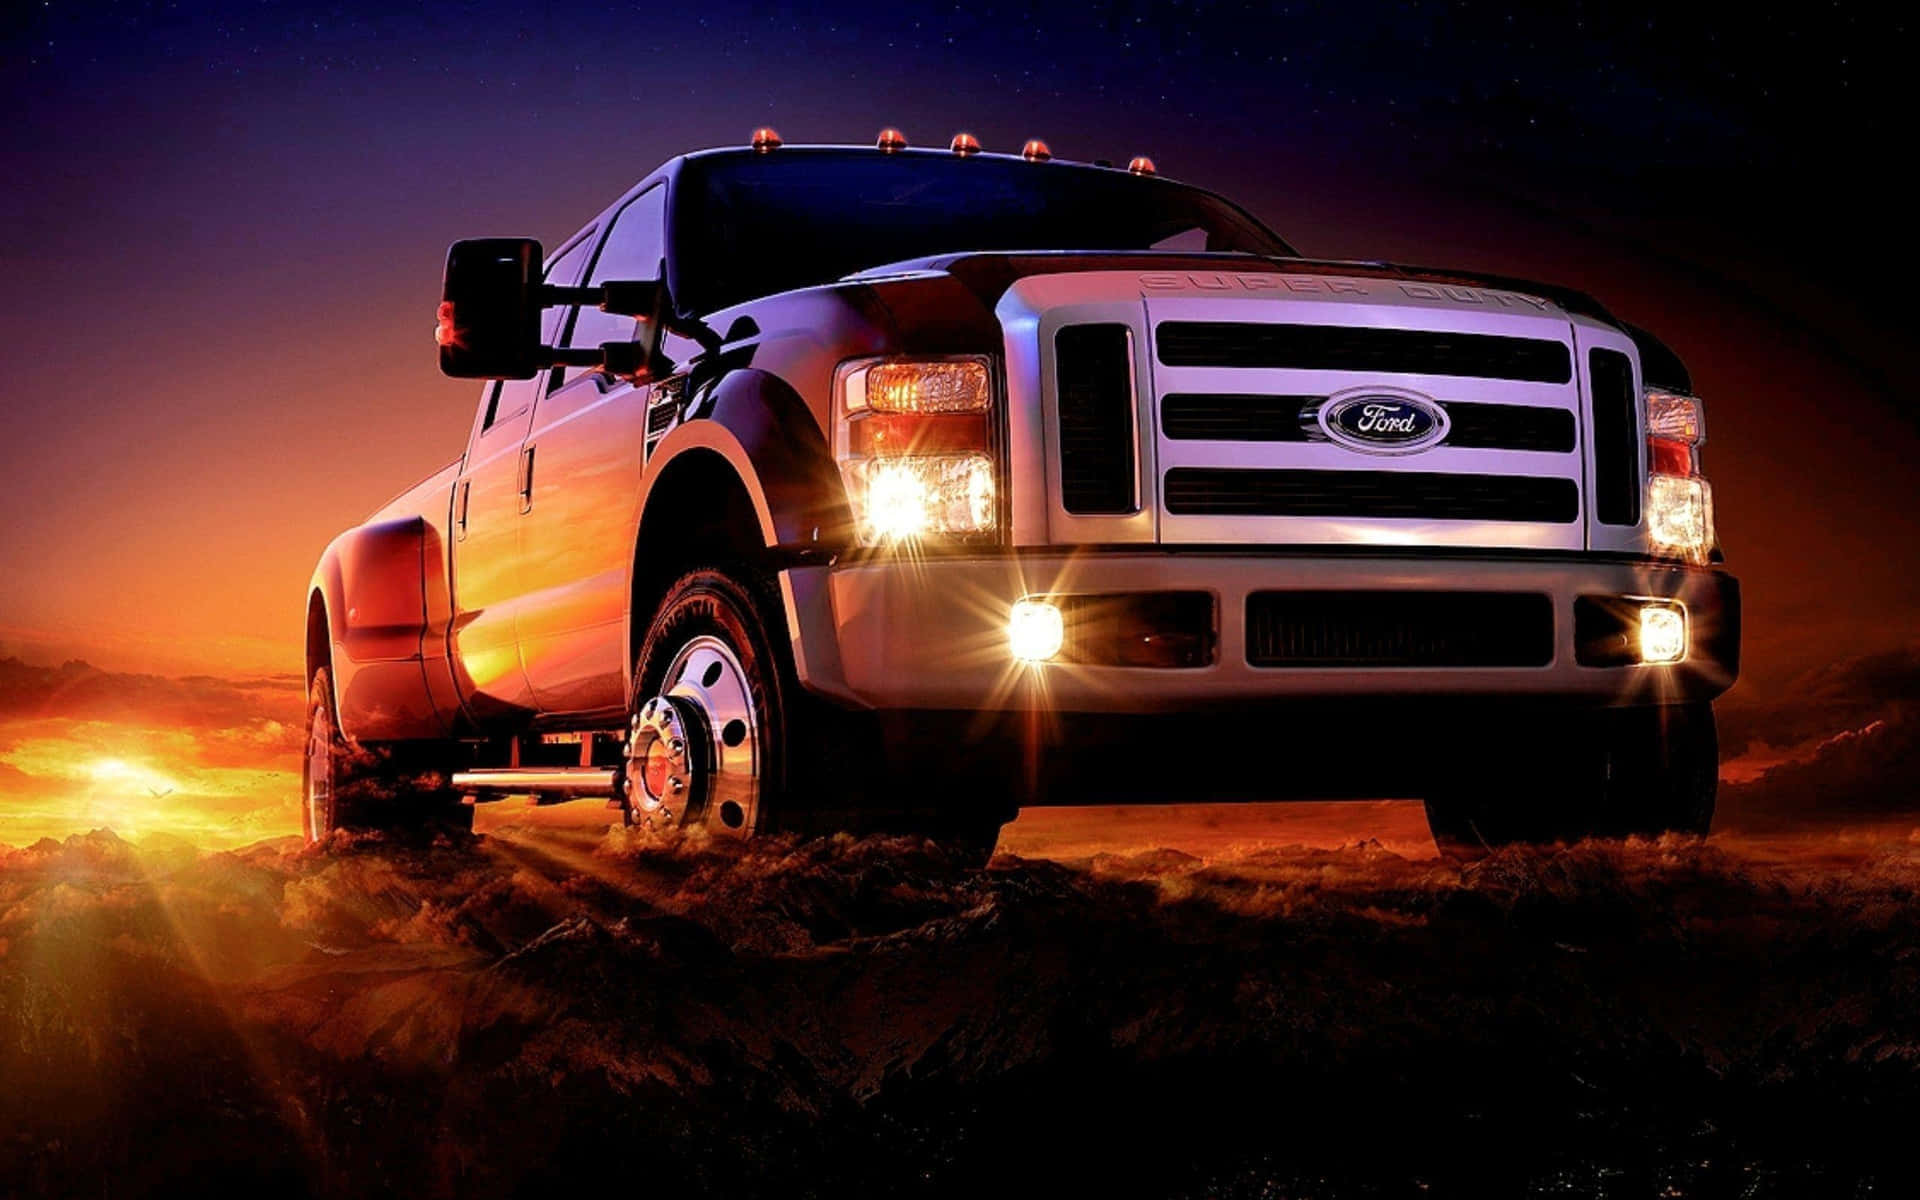 Ford Truck Sunset Dominance Wallpaper